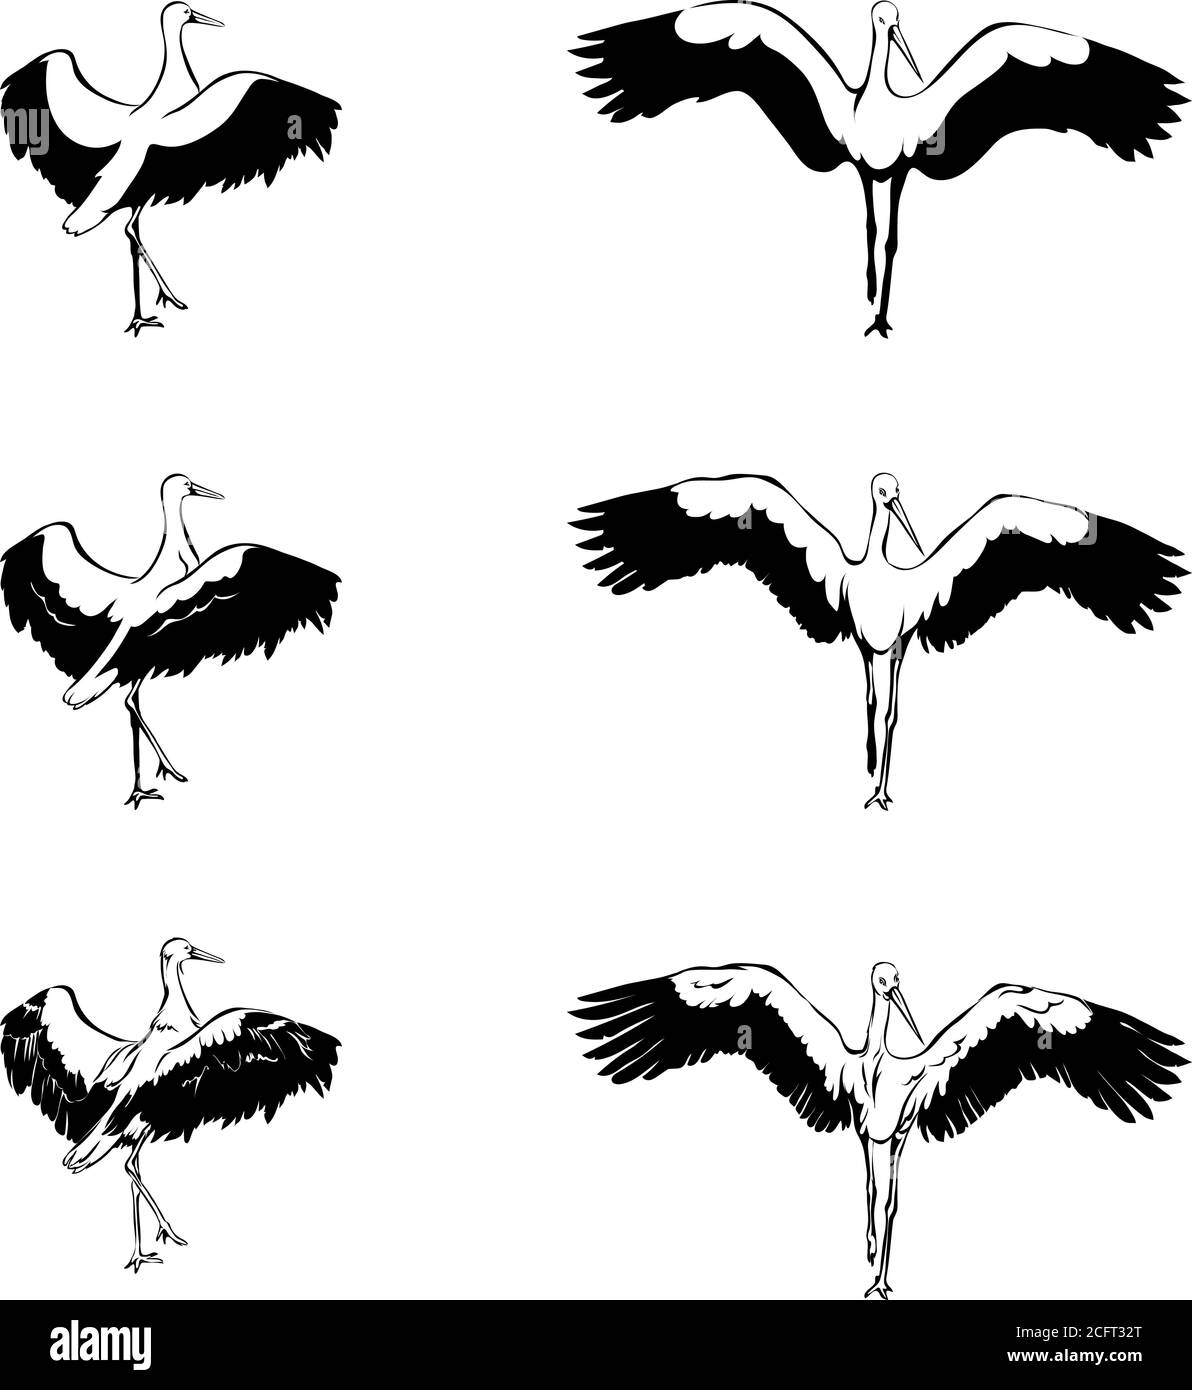 cerdo, pájaro, grúa, blanco, negro, vector, ilustración, gráfico, diseño, imagen, aislado, pico, ala, alas, plumas, plumas, naturaleza Ilustración del Vector